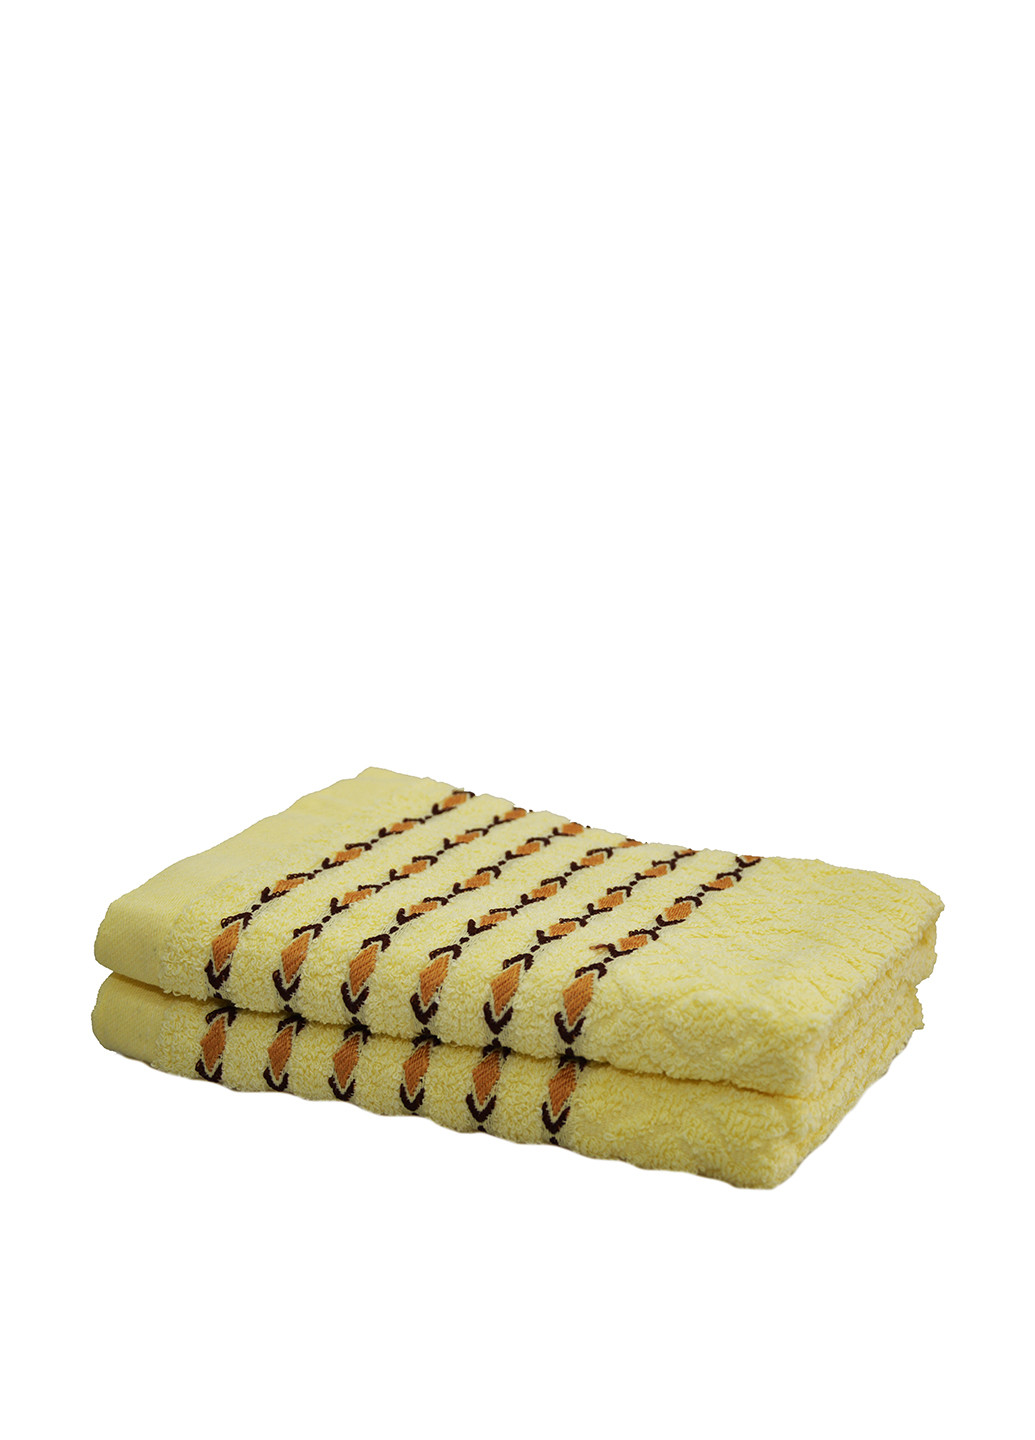 Smile полотенце, 50х100 см однотонный лимонный производство - Украина